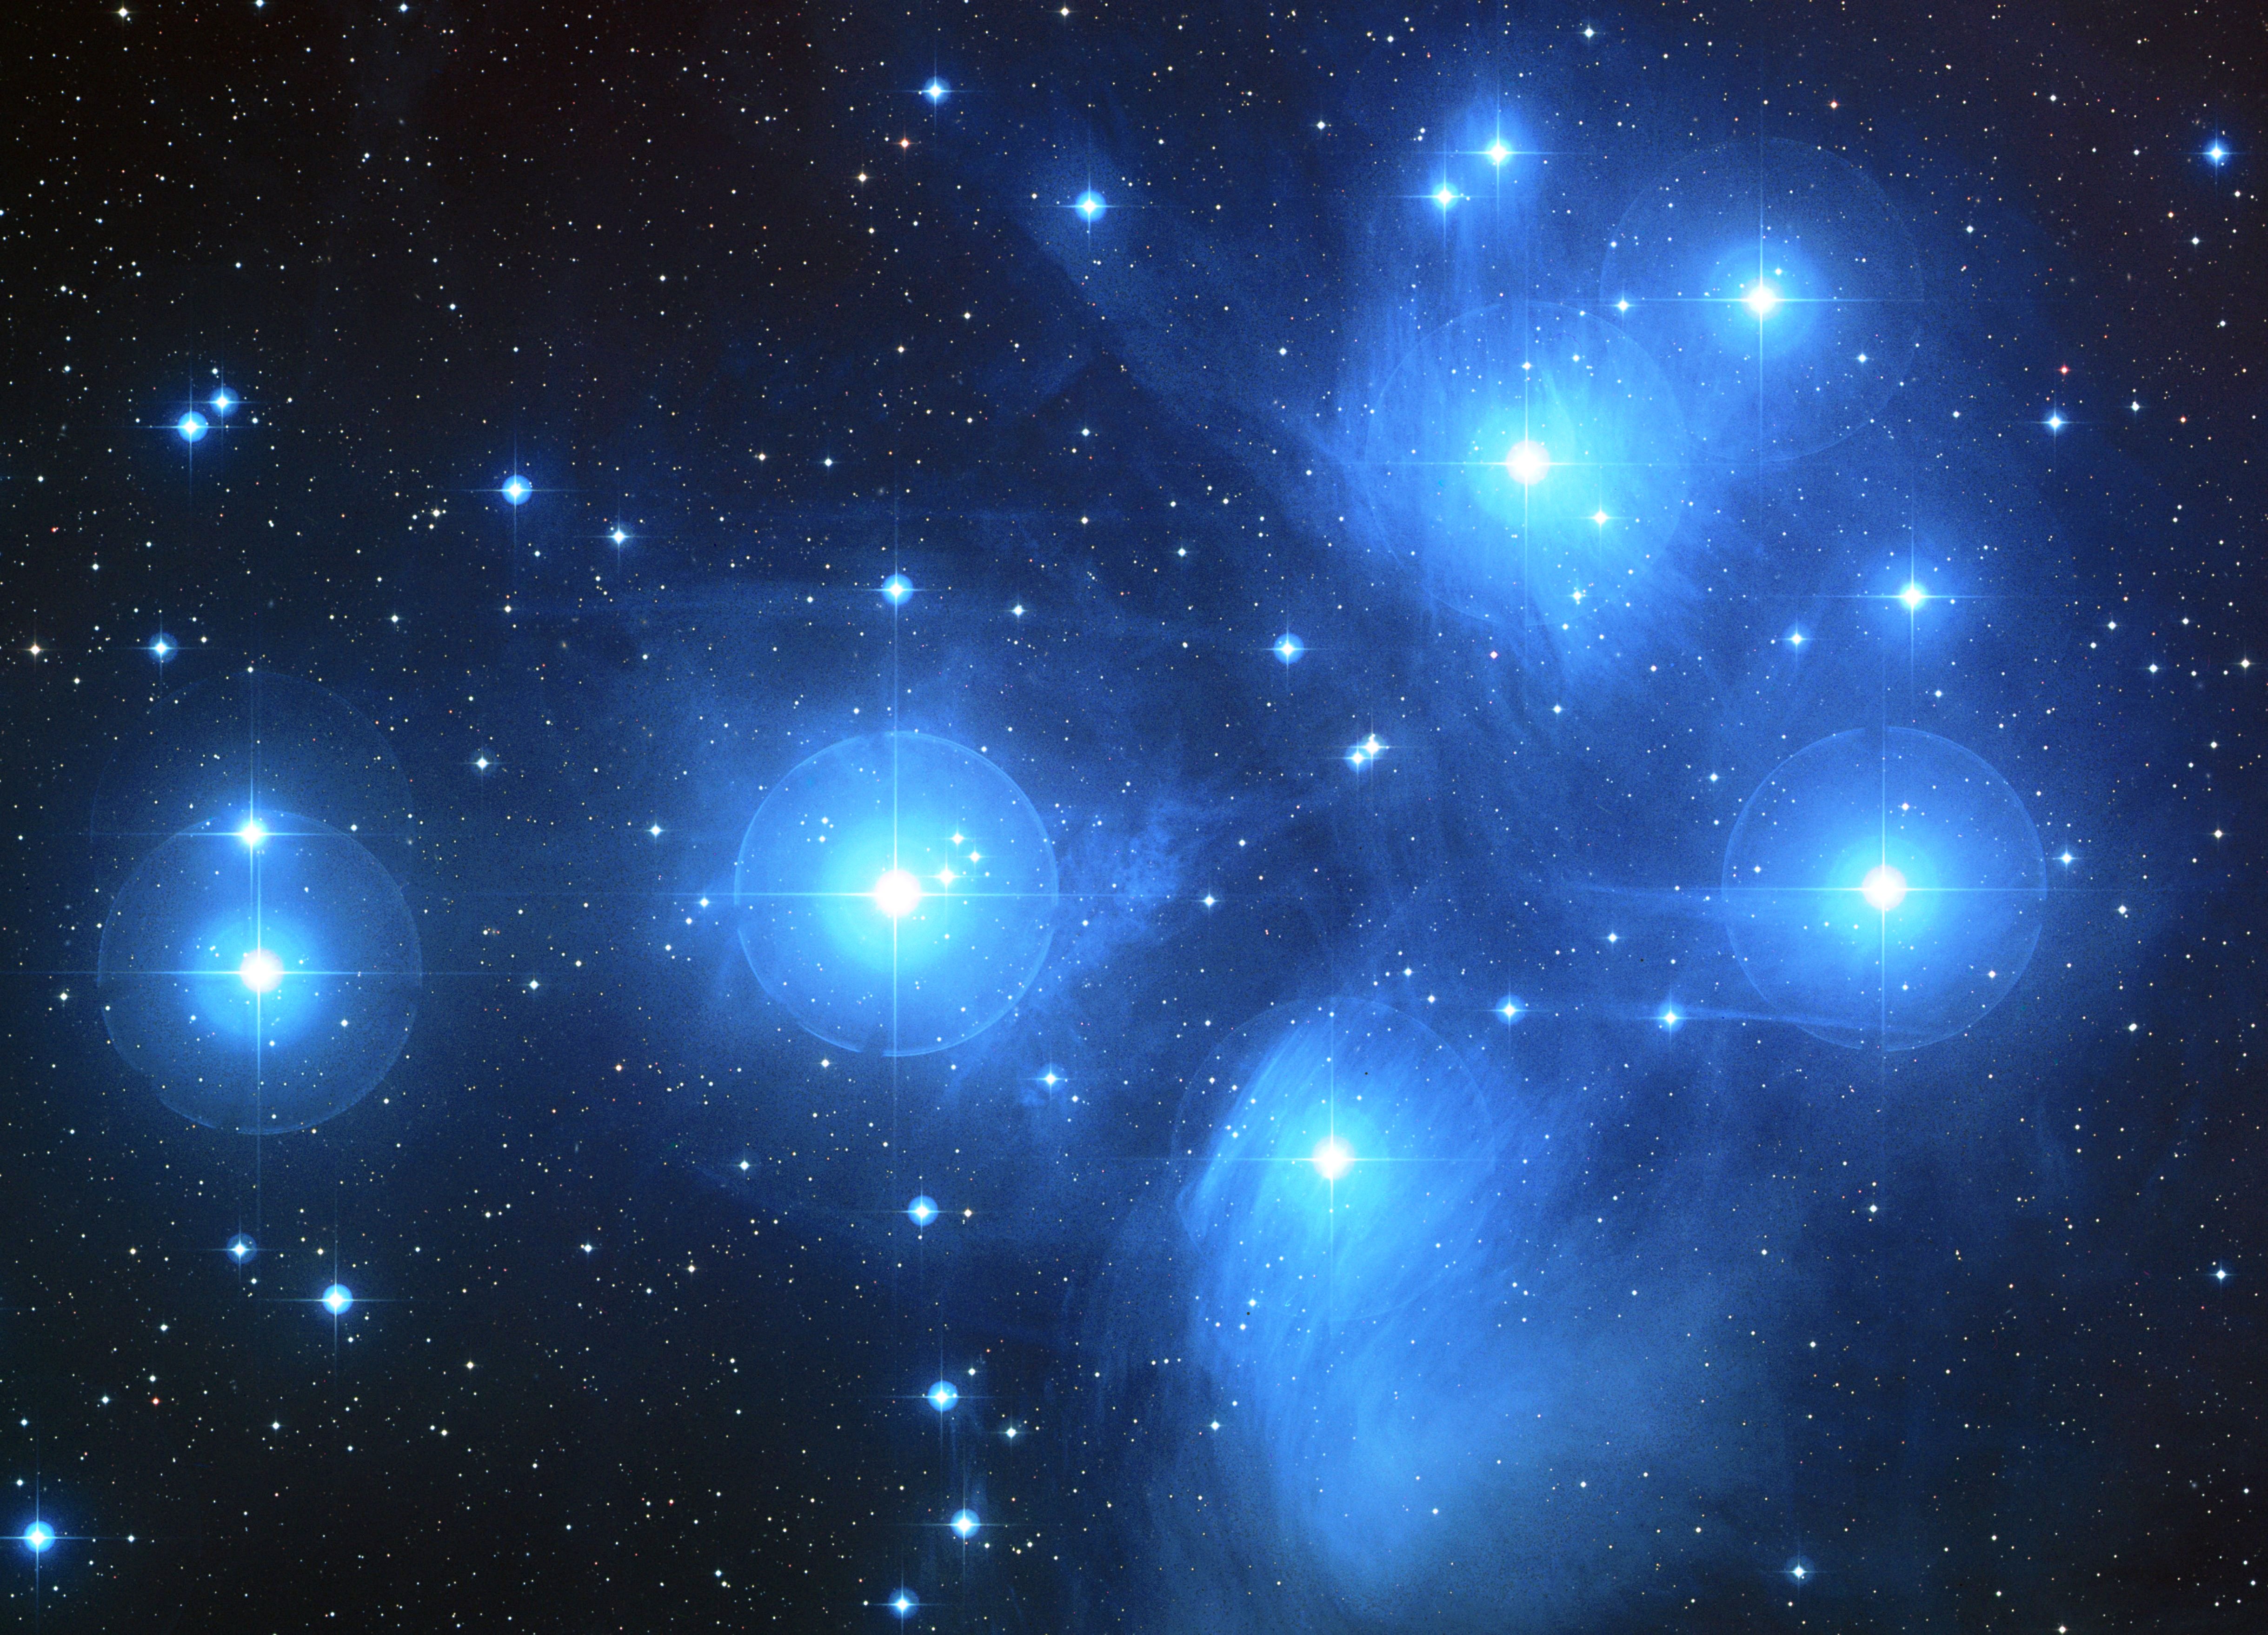 L'amas des Pléiades est un groupe de milliers de jeunes étoiles chaudes nées en même temps ou presque dans un nuage moléculaire. Il s'agit d'un amas ouvert d'étoiles qui se seront dispersées dans quelques centaines de millions d'années. Le Soleil est née dans un amas similaire de sorte qu'il a alors dû passer relativement près de plusieurs de ses jeunes sœurs. © Nasa